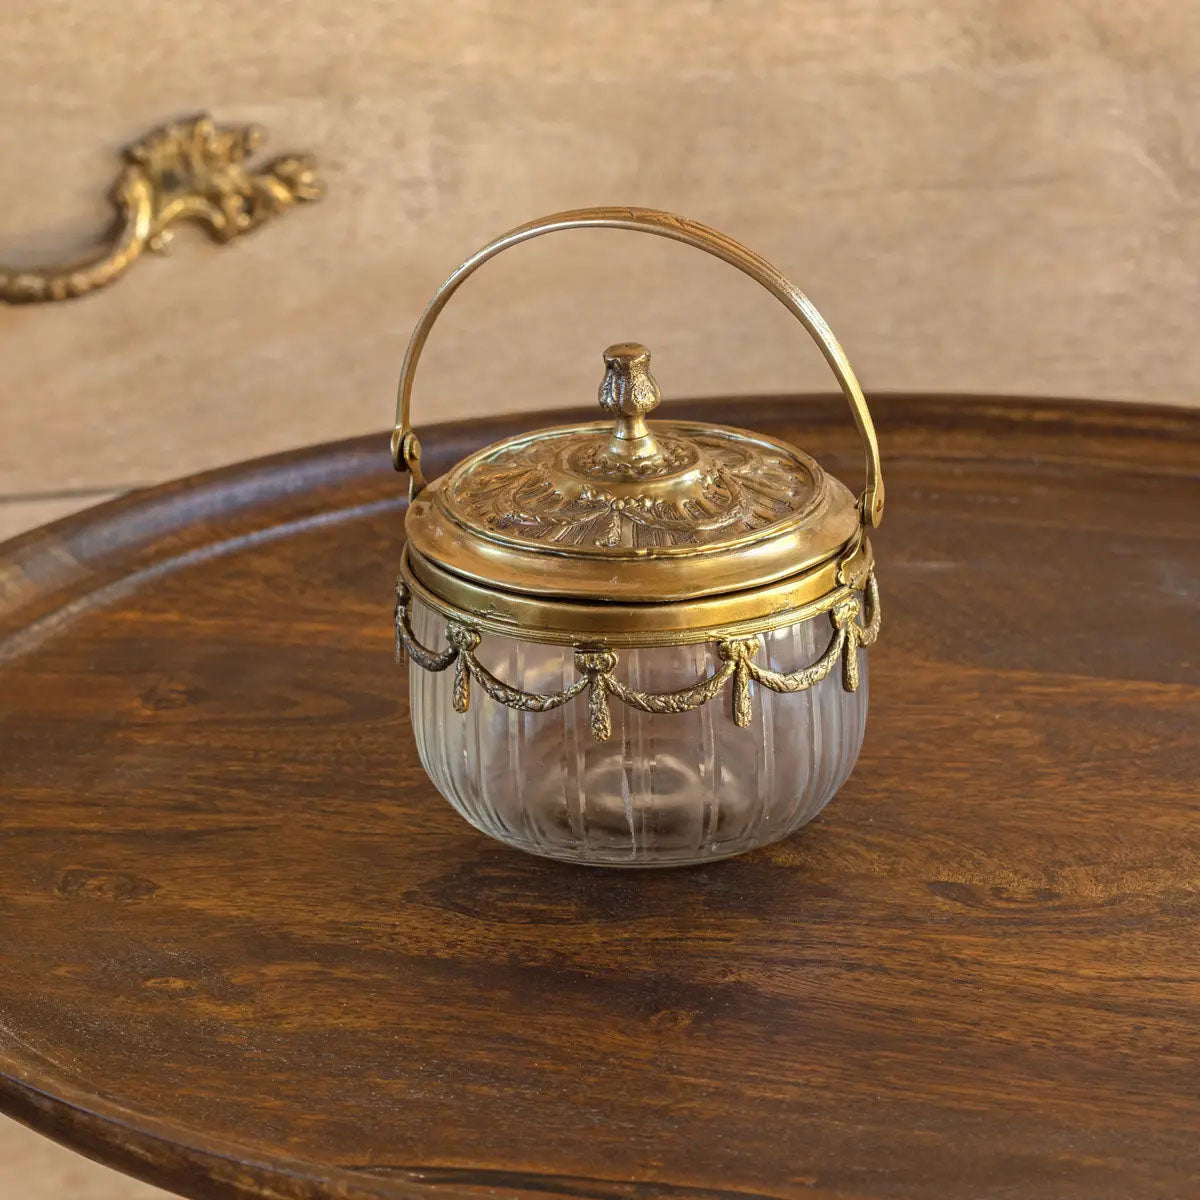 Handled Vintage Style Vanity Jar - More Coming